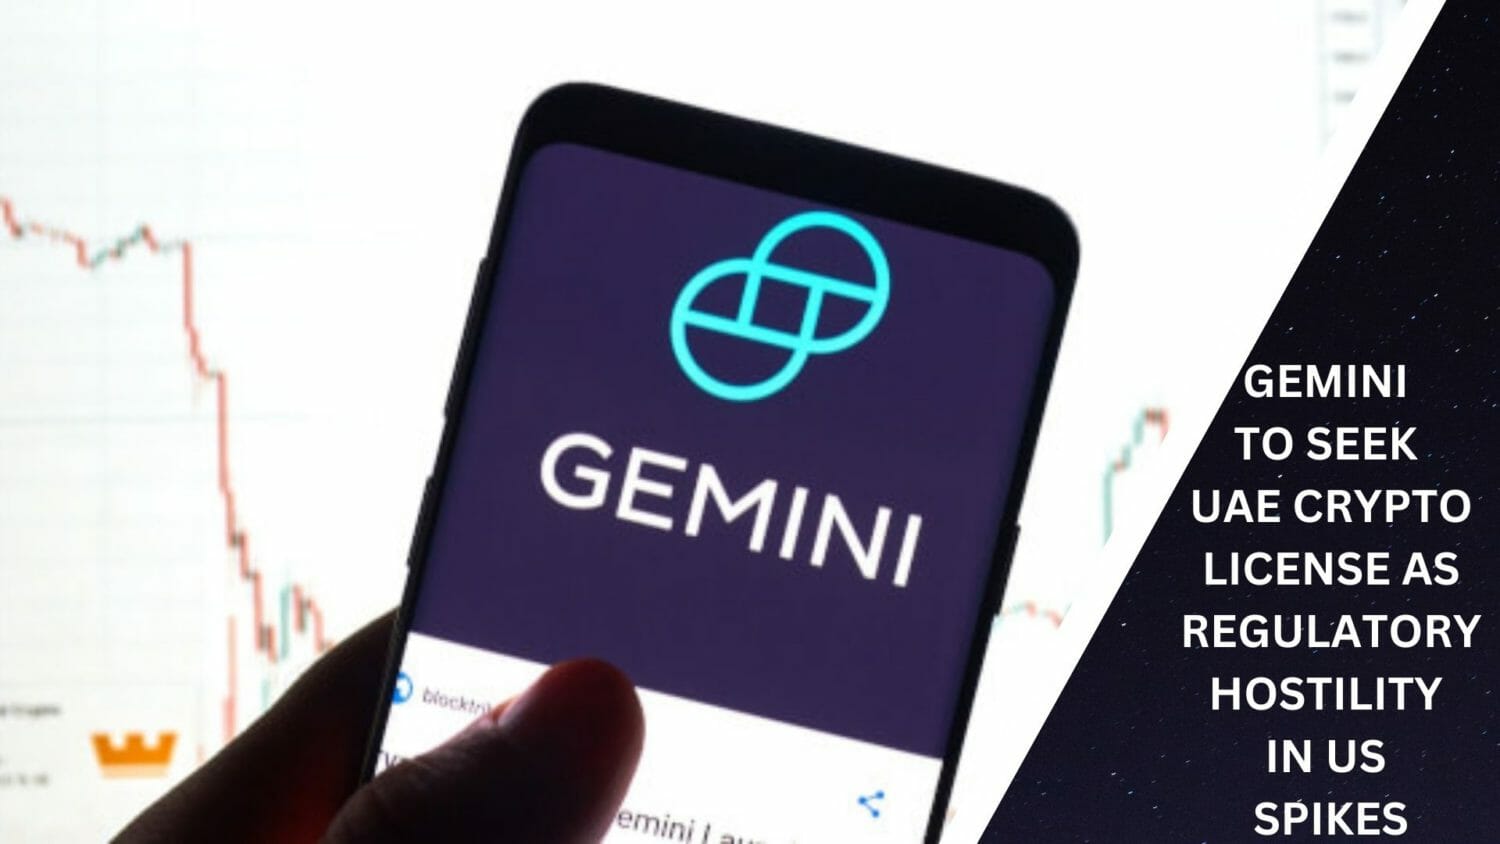 Gemini To Seek Uae Crypto License As Regulatory Hostility In Us Spikes